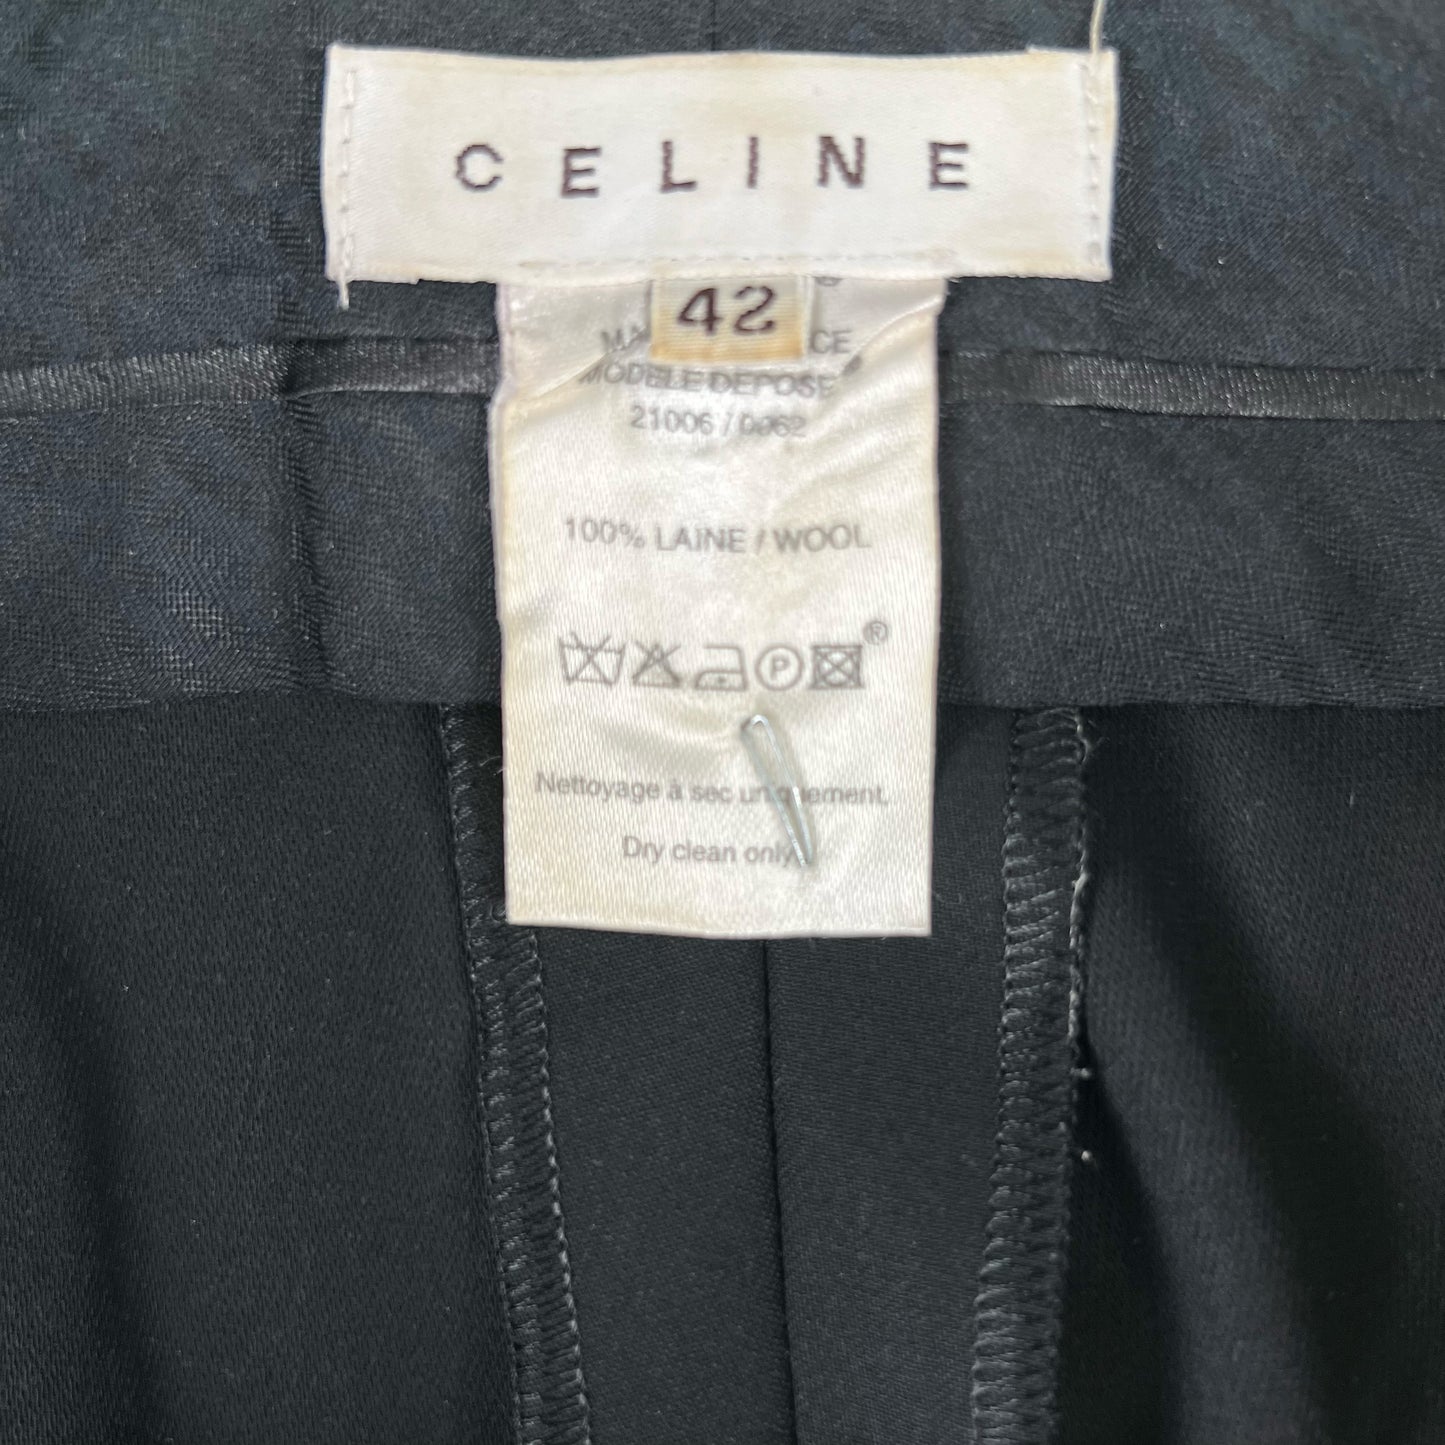 Celine S/S 02 Wool Trousers- 31x31.5